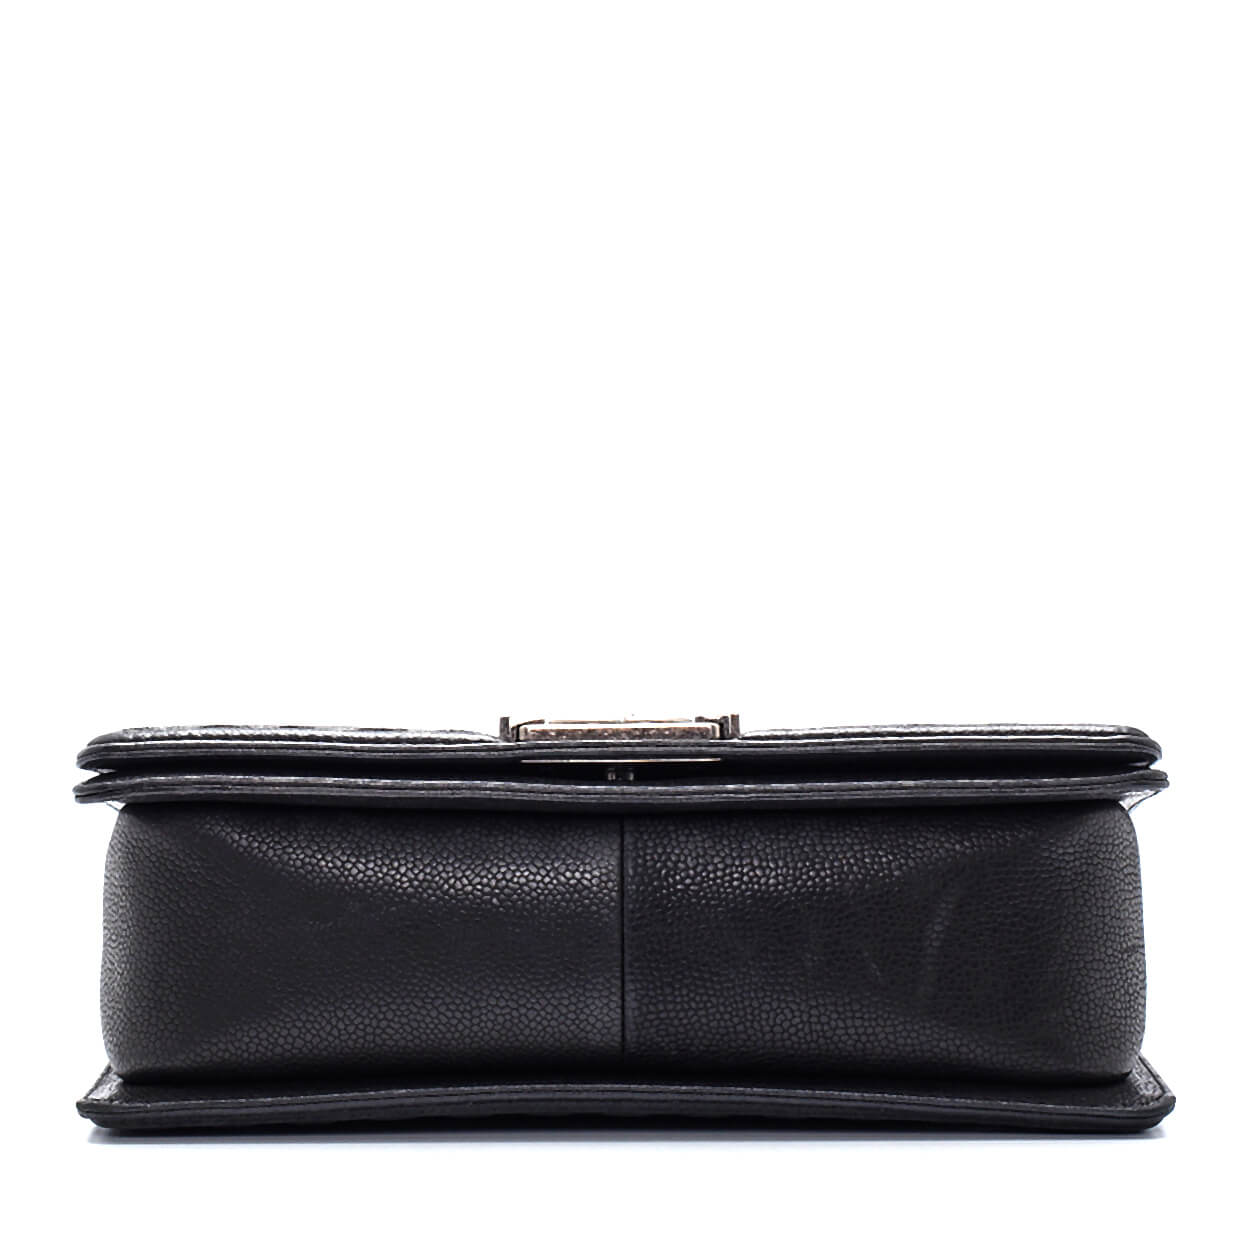 Chanel - Black Caviar Leather Stitch Medium Le Boy Bag